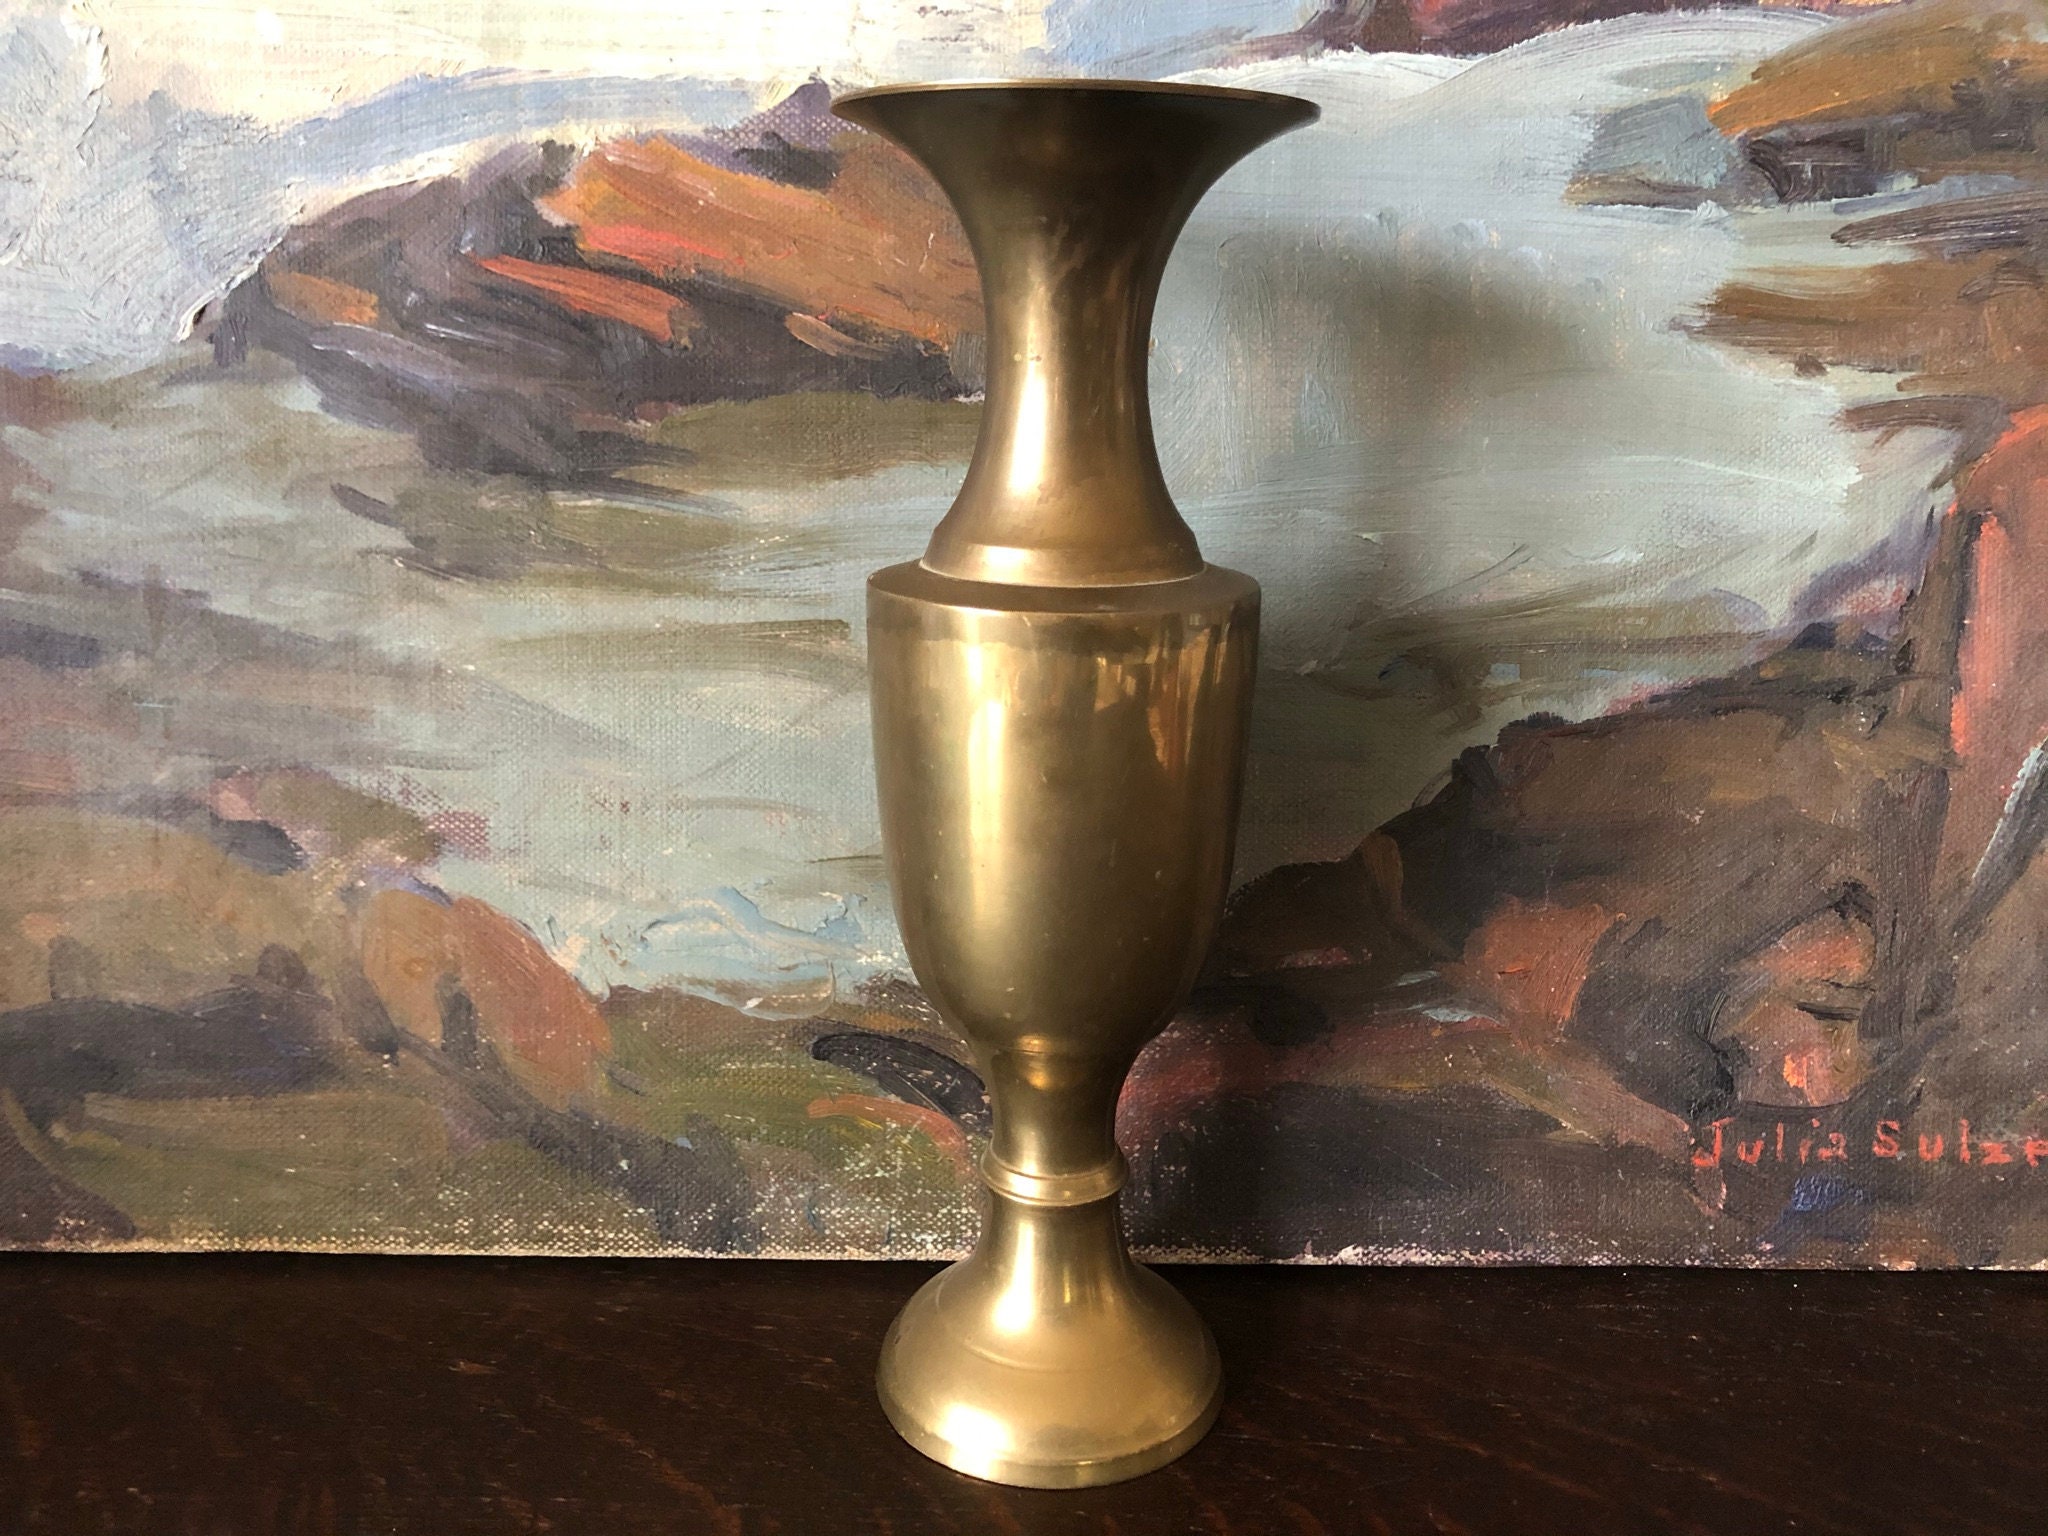 India Brass Vase -  Canada